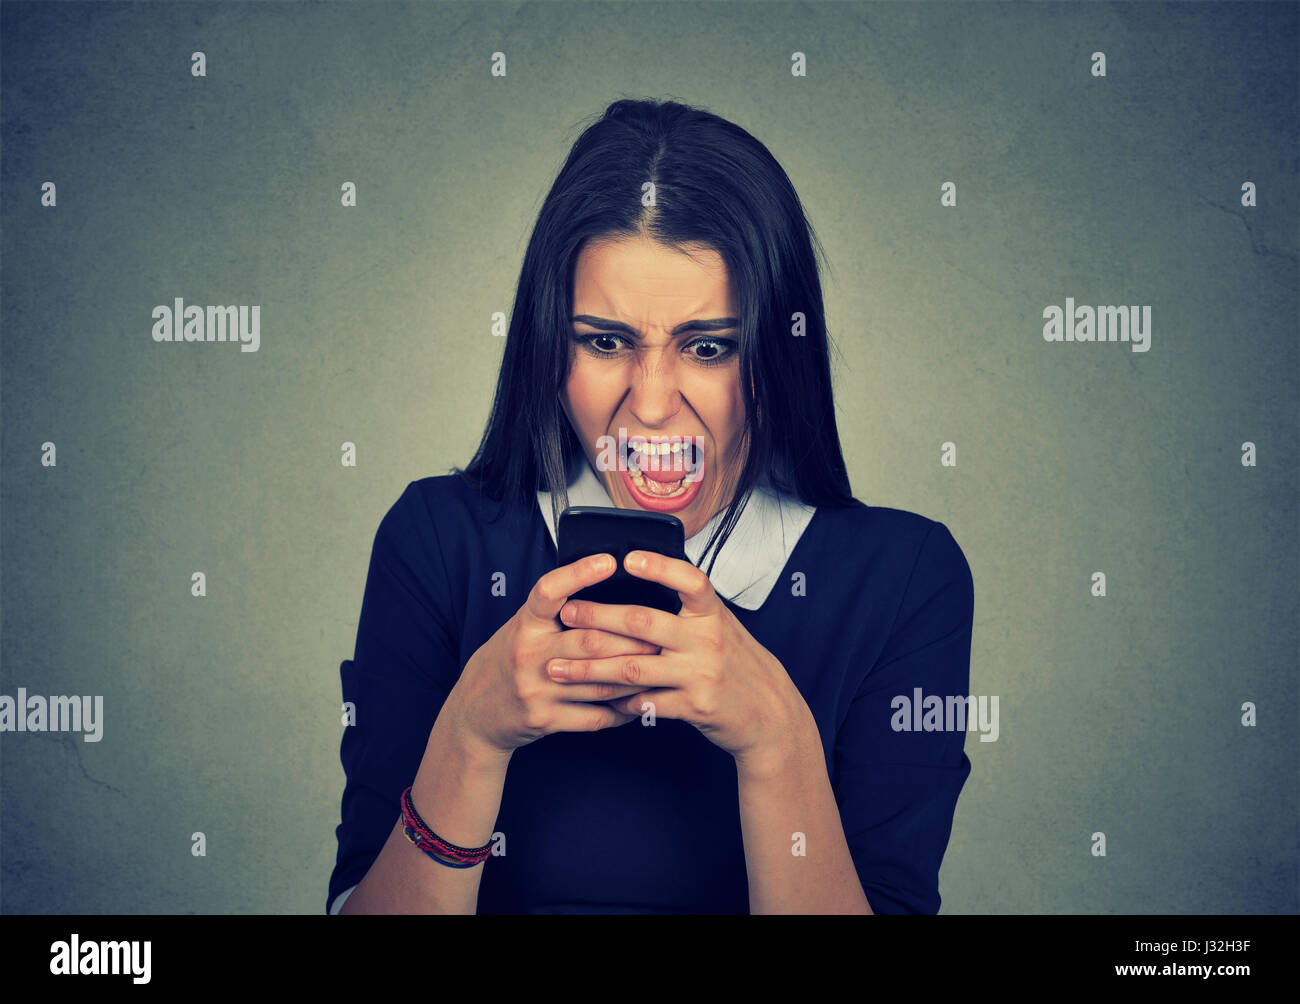 Ritratto arrabbiato giovane donna urlando sul telefono cellulare isolato su sfondo grigio. Le emozioni negative sentimenti faccia atteggiamento di espressione Foto Stock